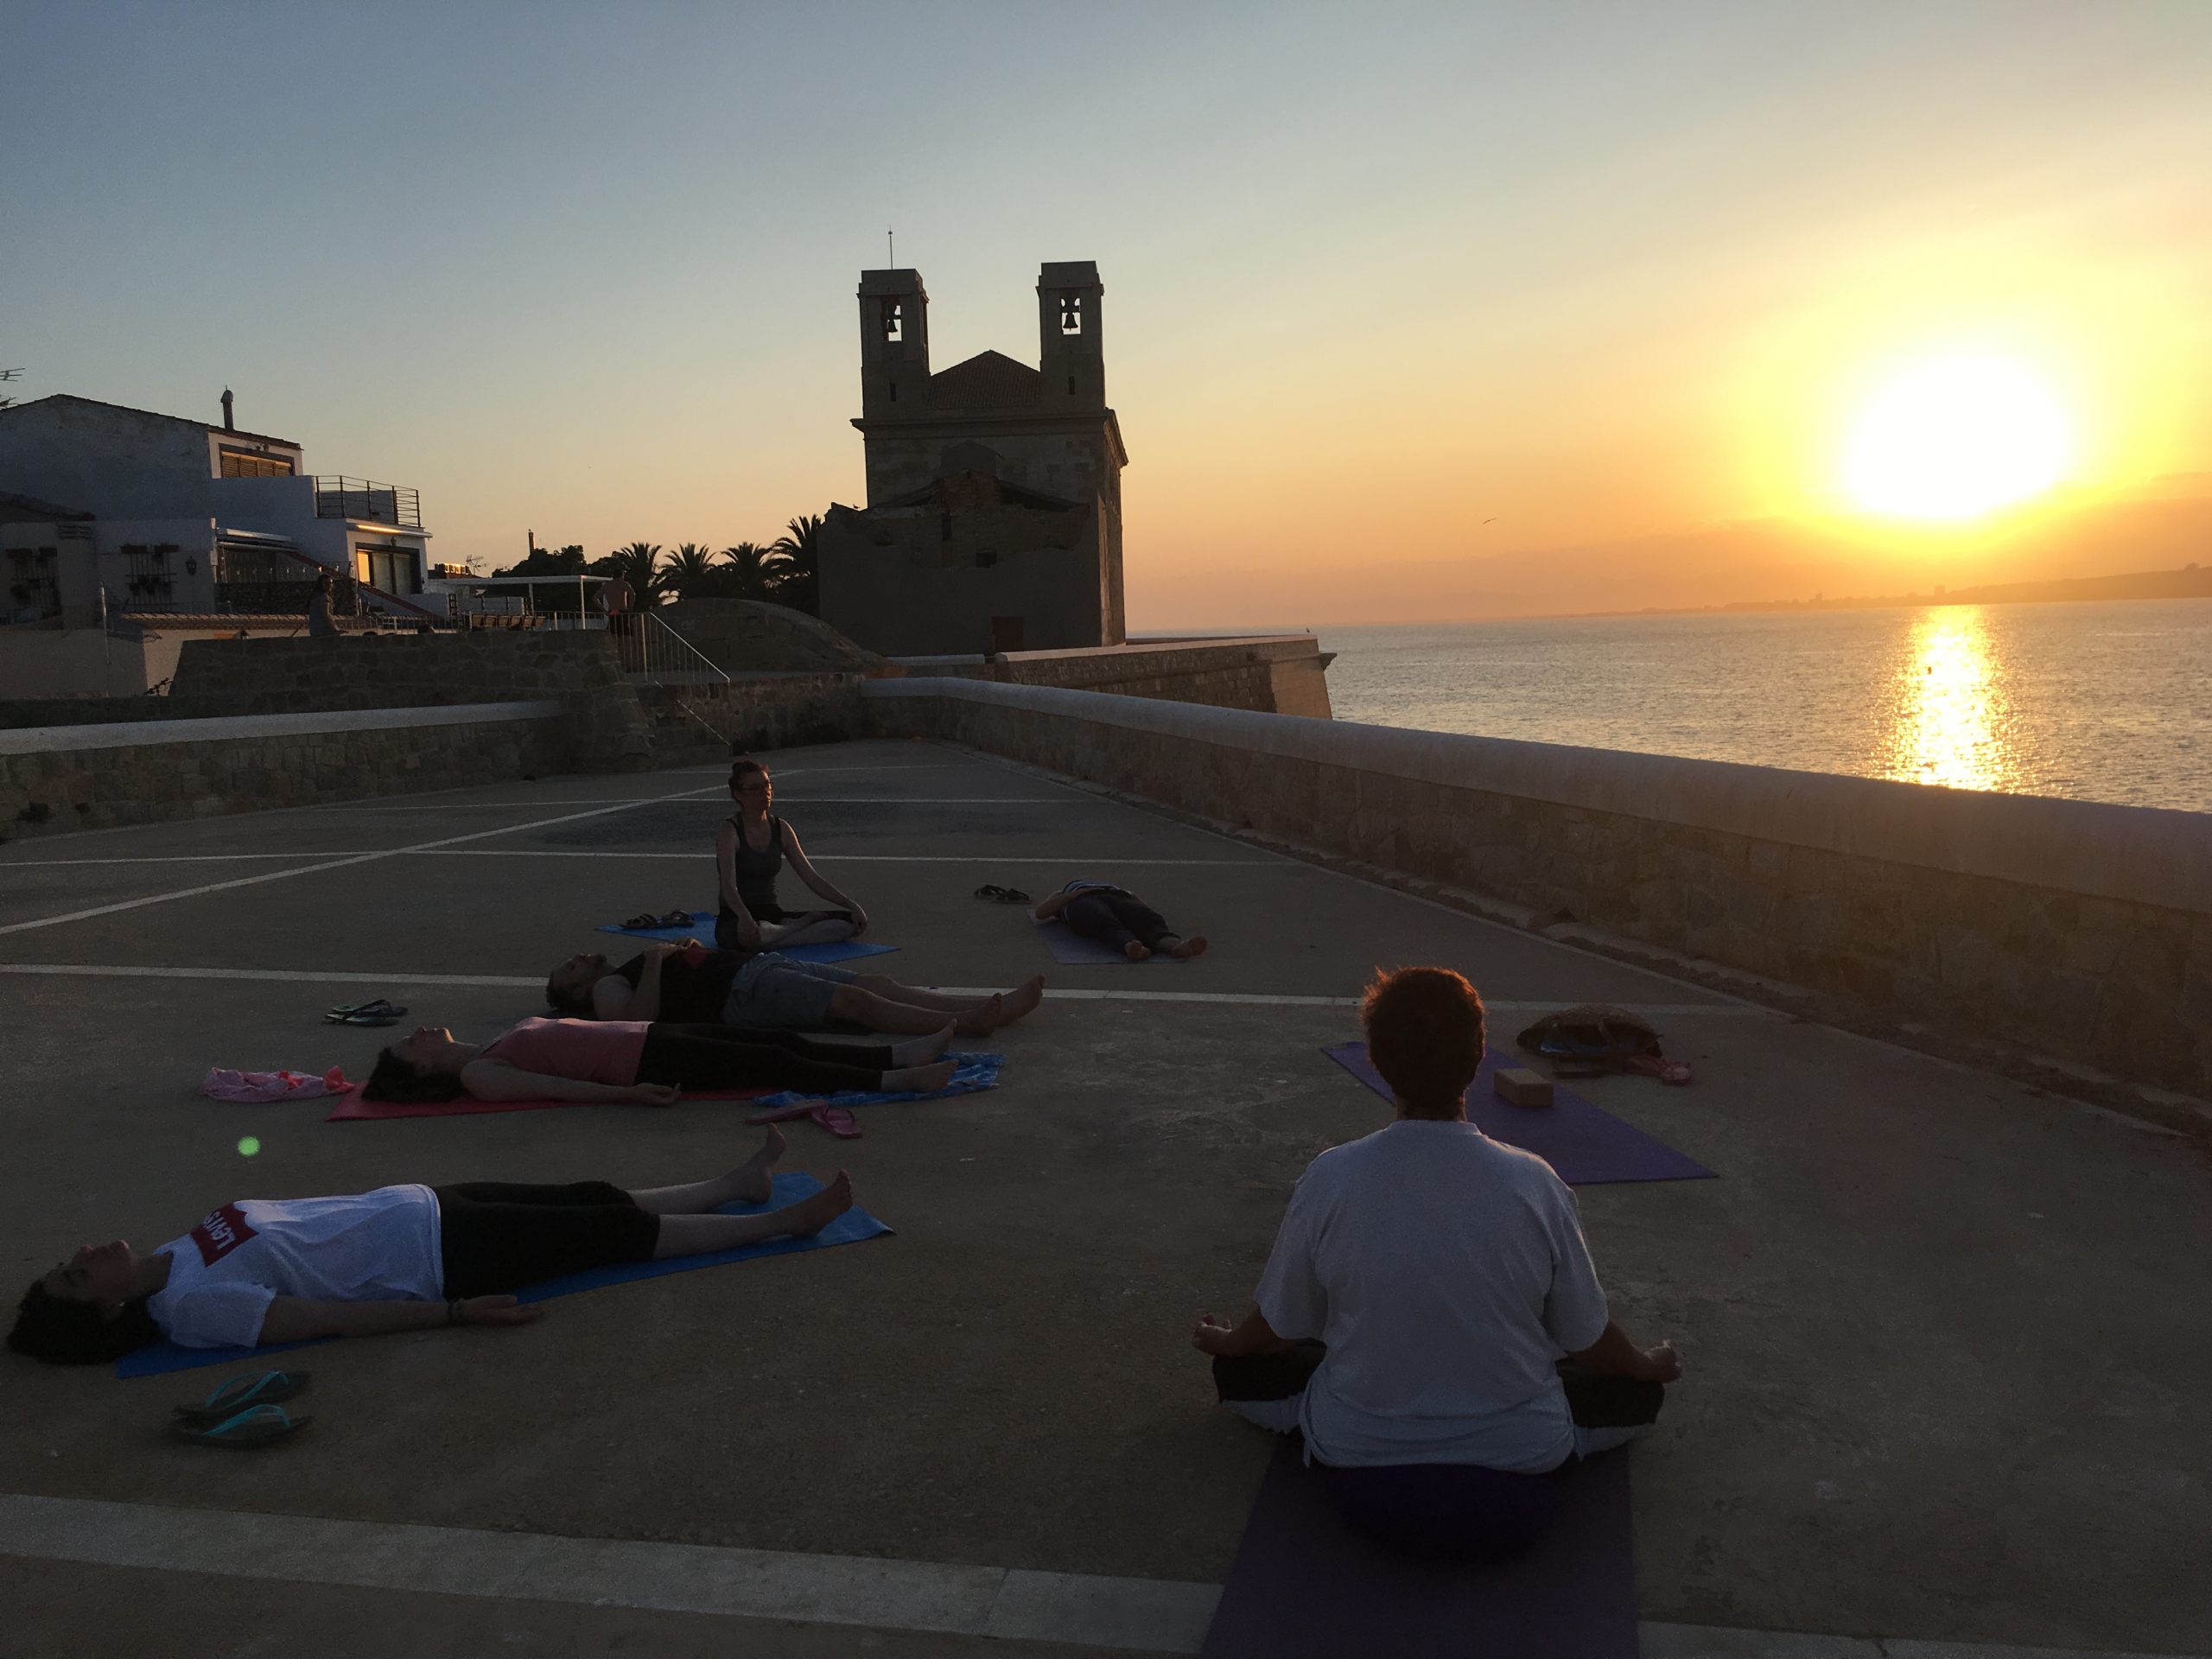 Cours de la retraite de Yoga et Ayurvéda Ile de Tabarca en Espagne